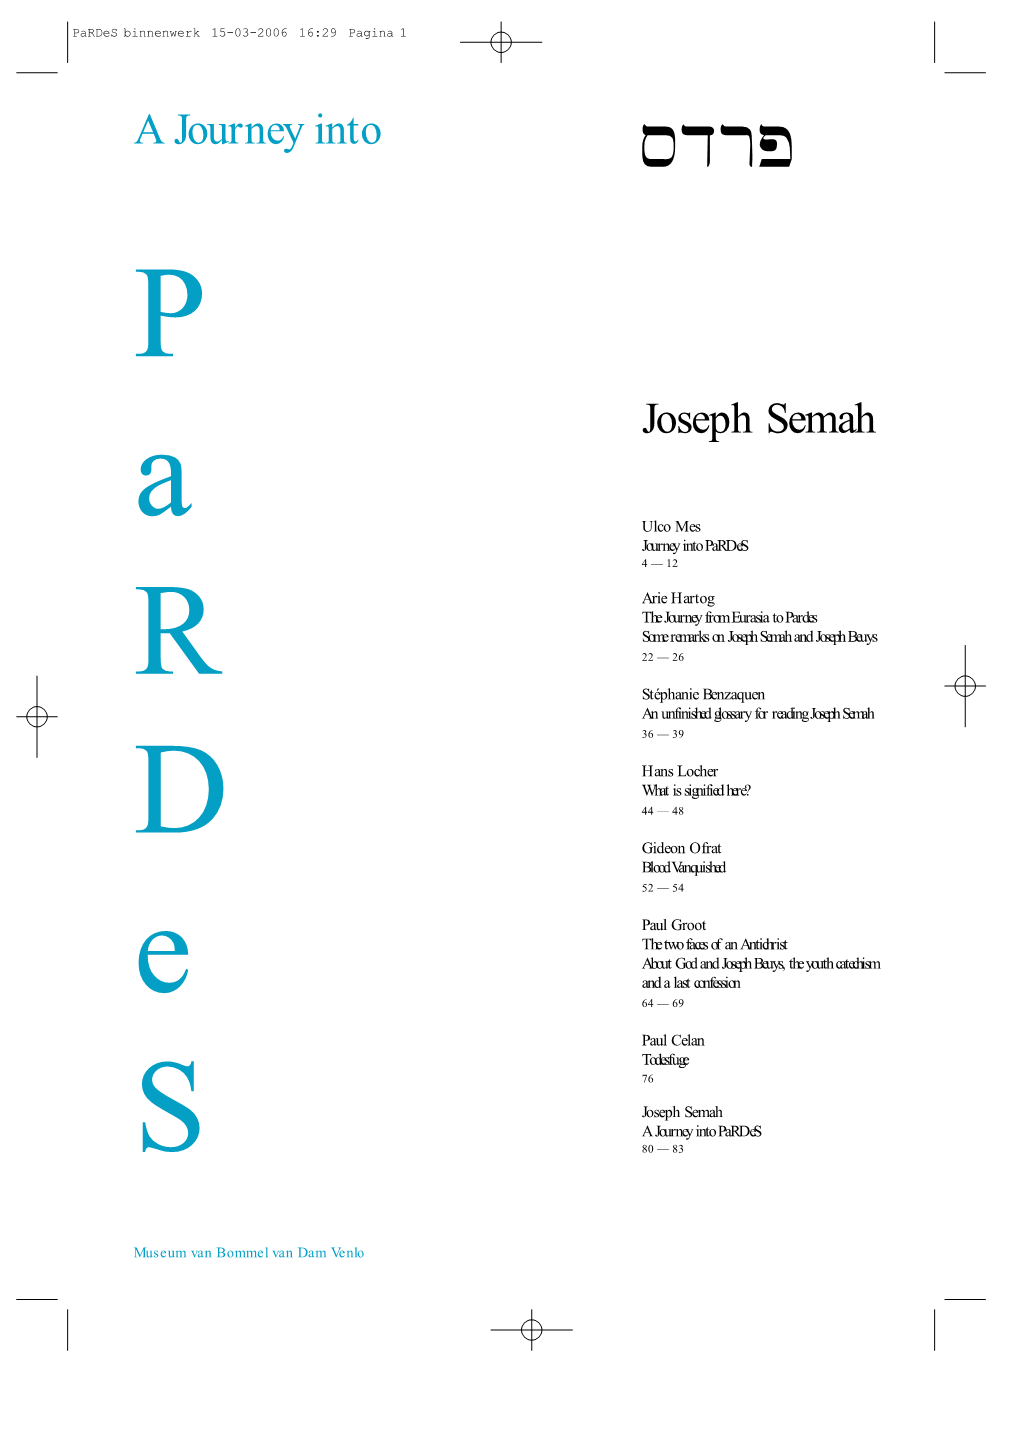 Journey Into Pardes (PDF)